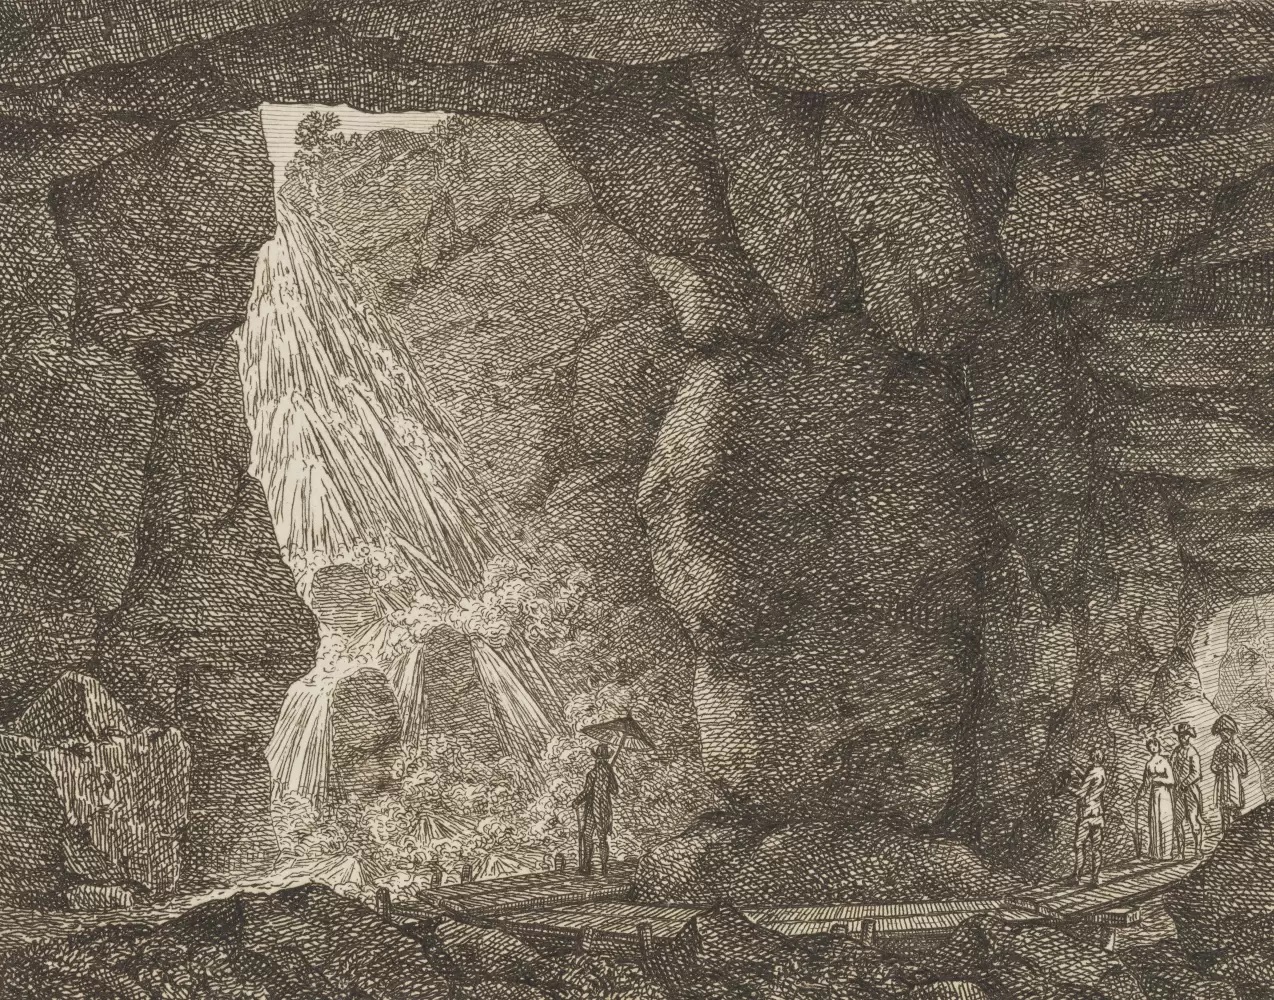 Karel Postl, Jeskyně s vodopádem, kolem 1810